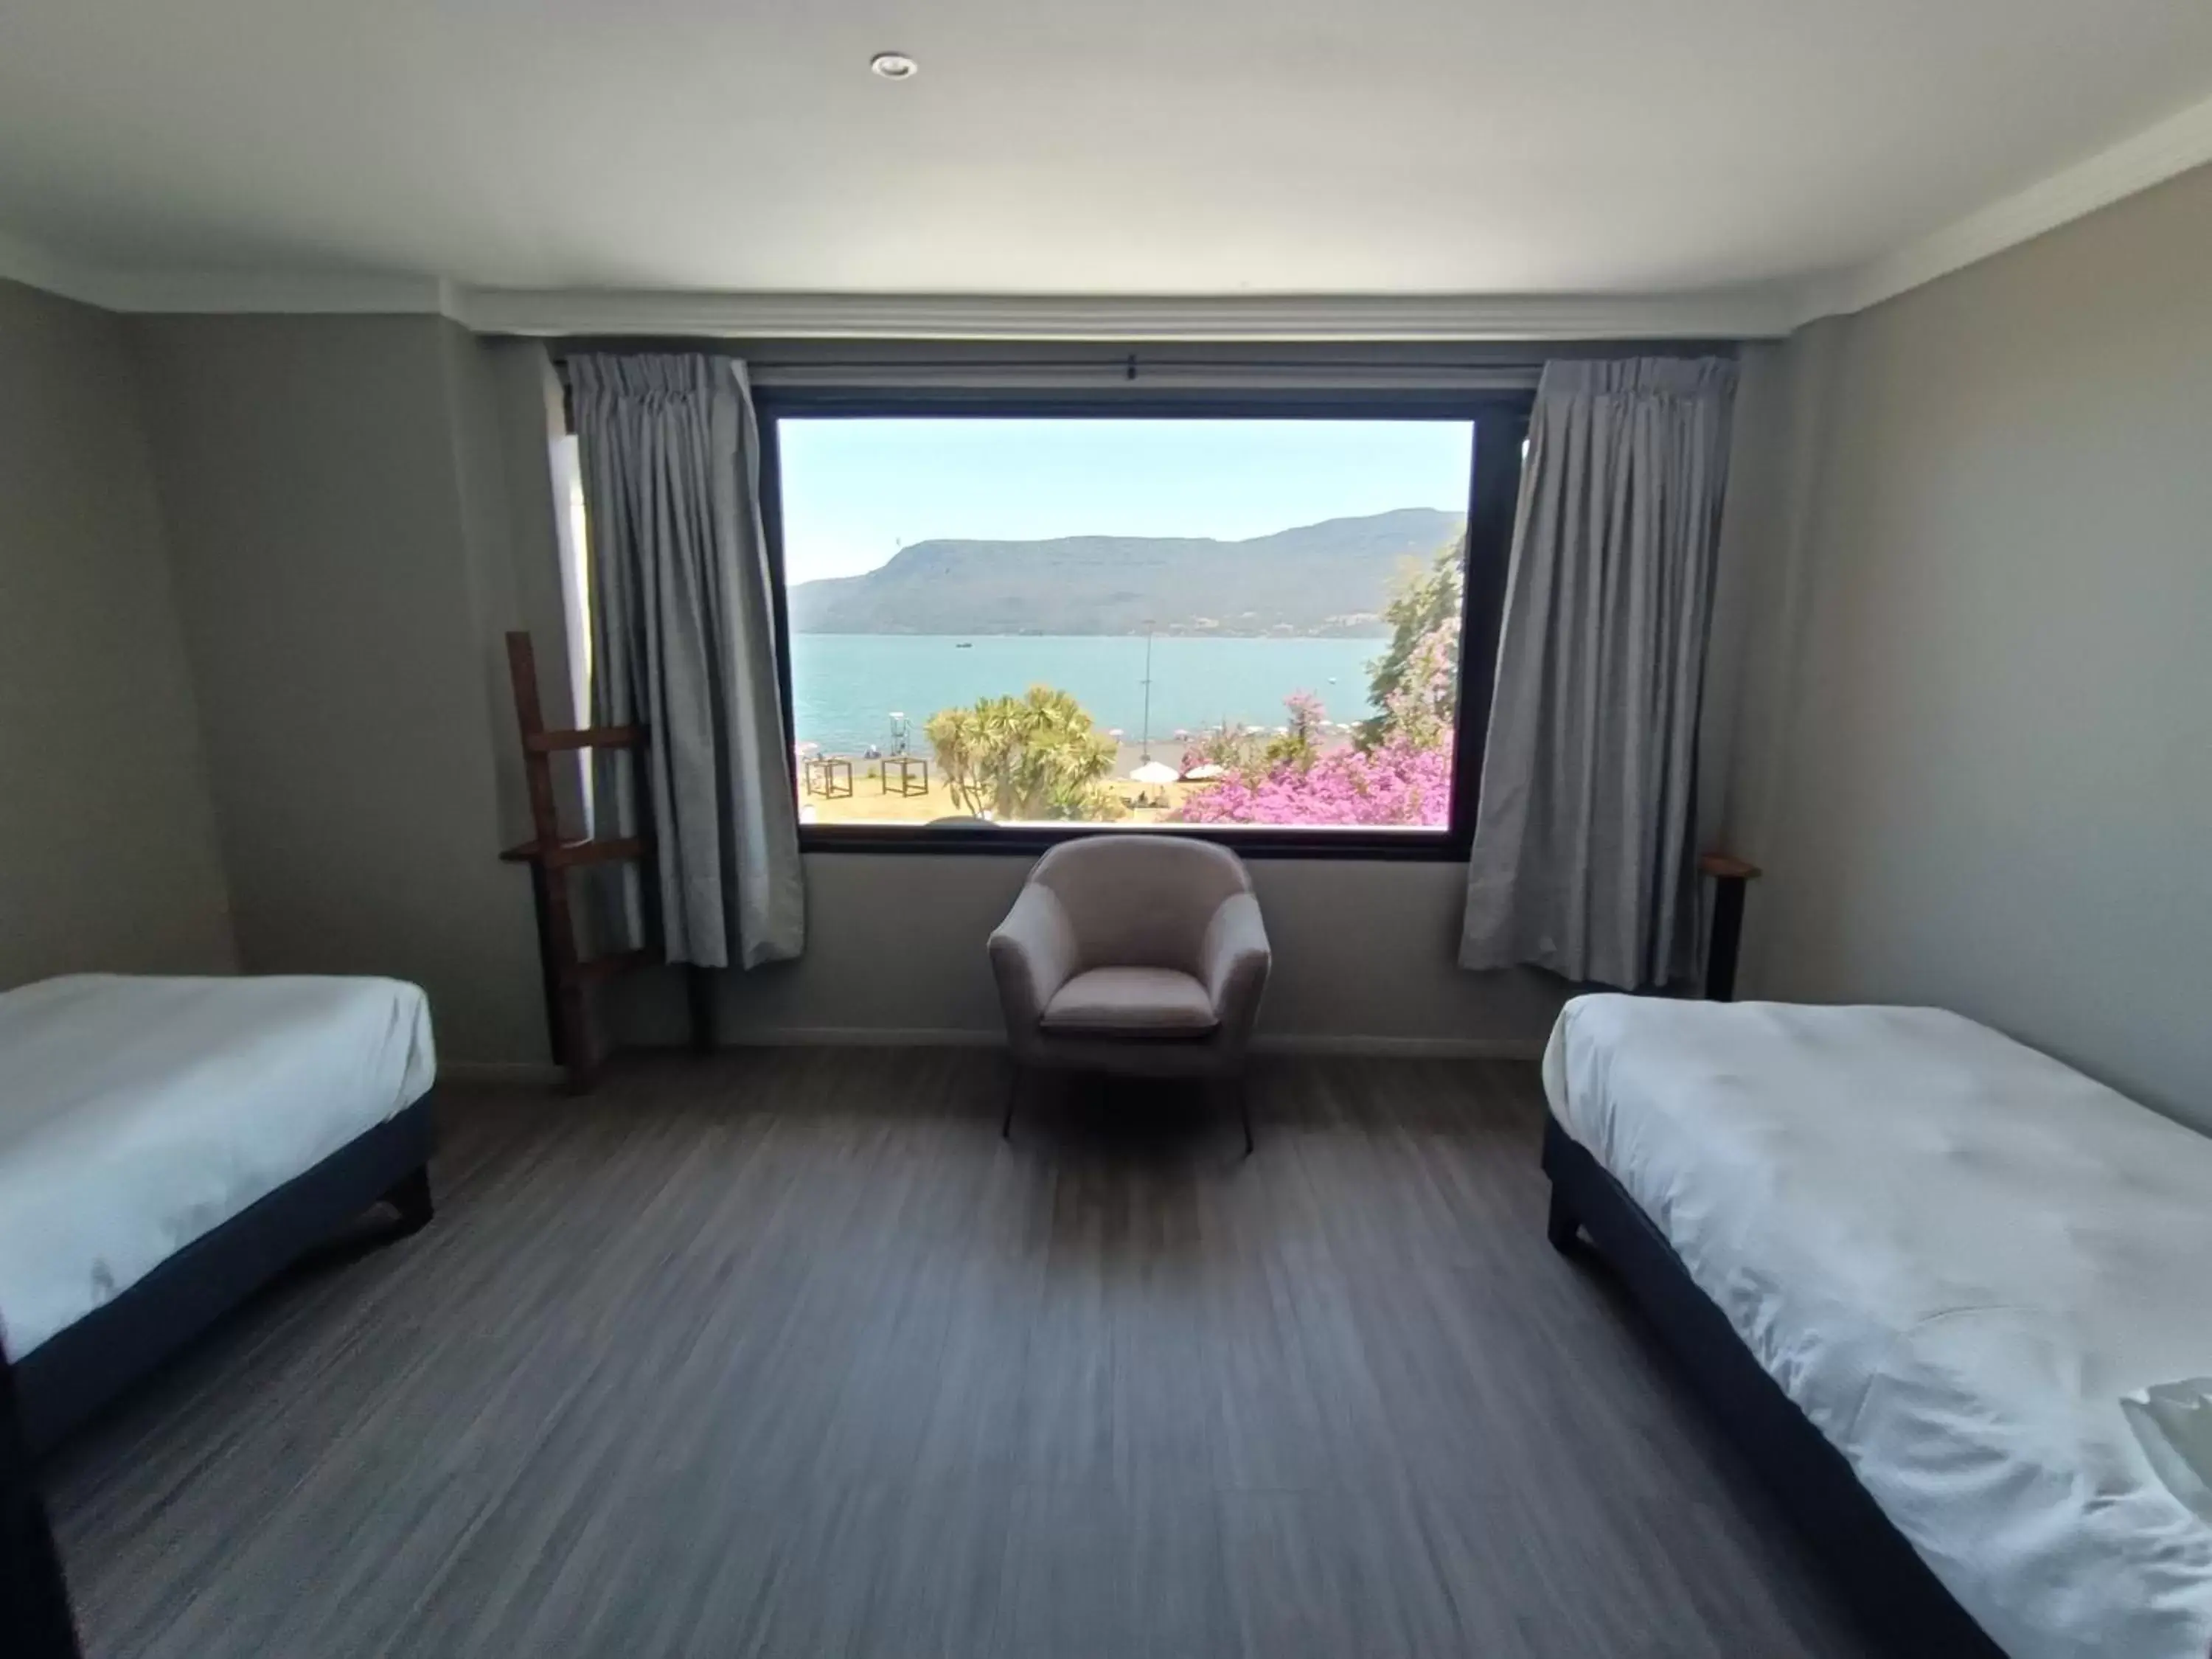 Bedroom in Hotel Enjoy Pucon